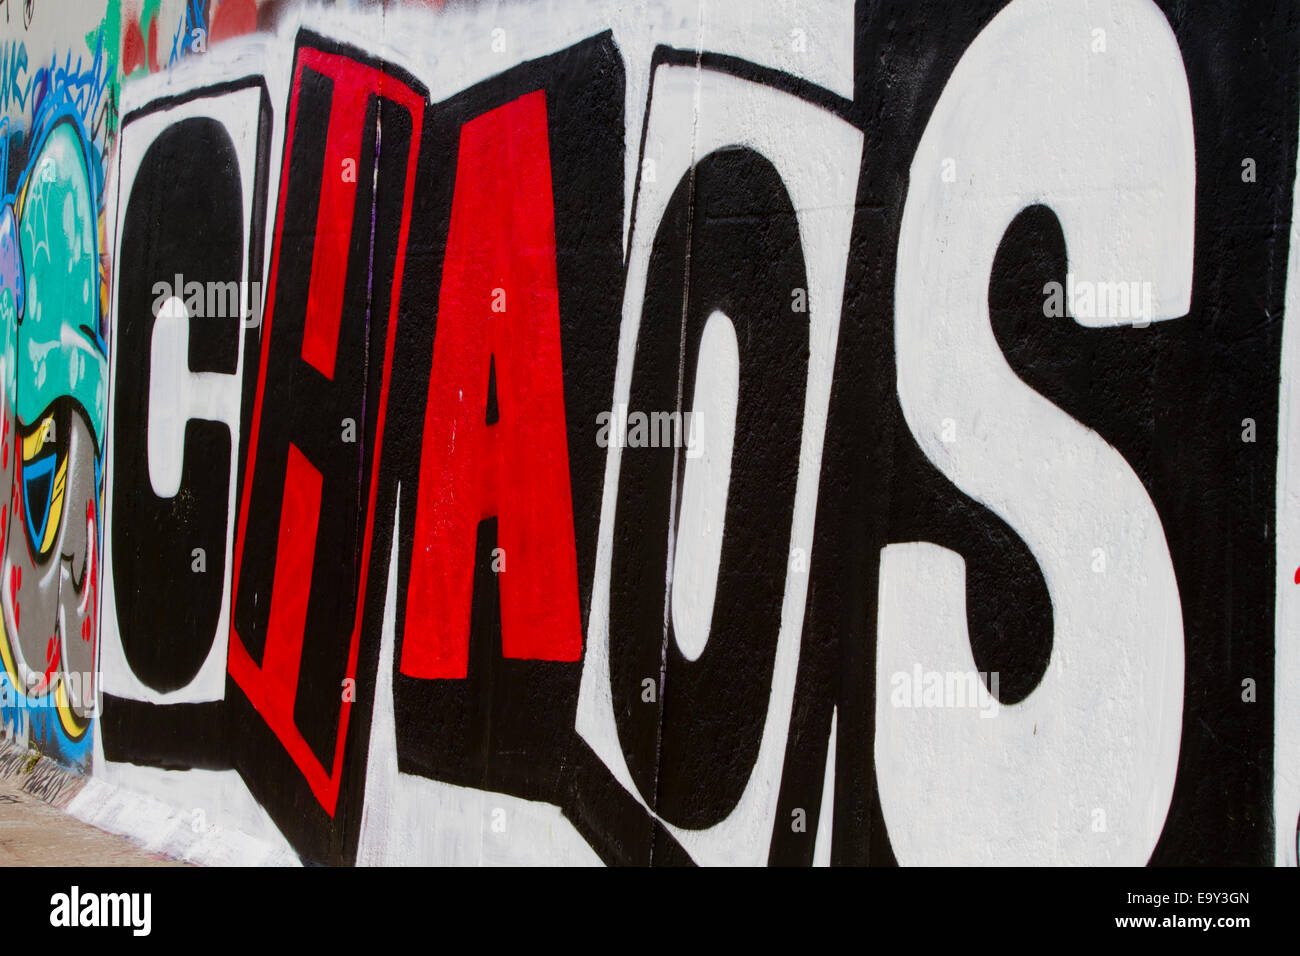 Muro de Berlín Caos pintadas de rojo y blanco con letras de imprenta Foto de stock